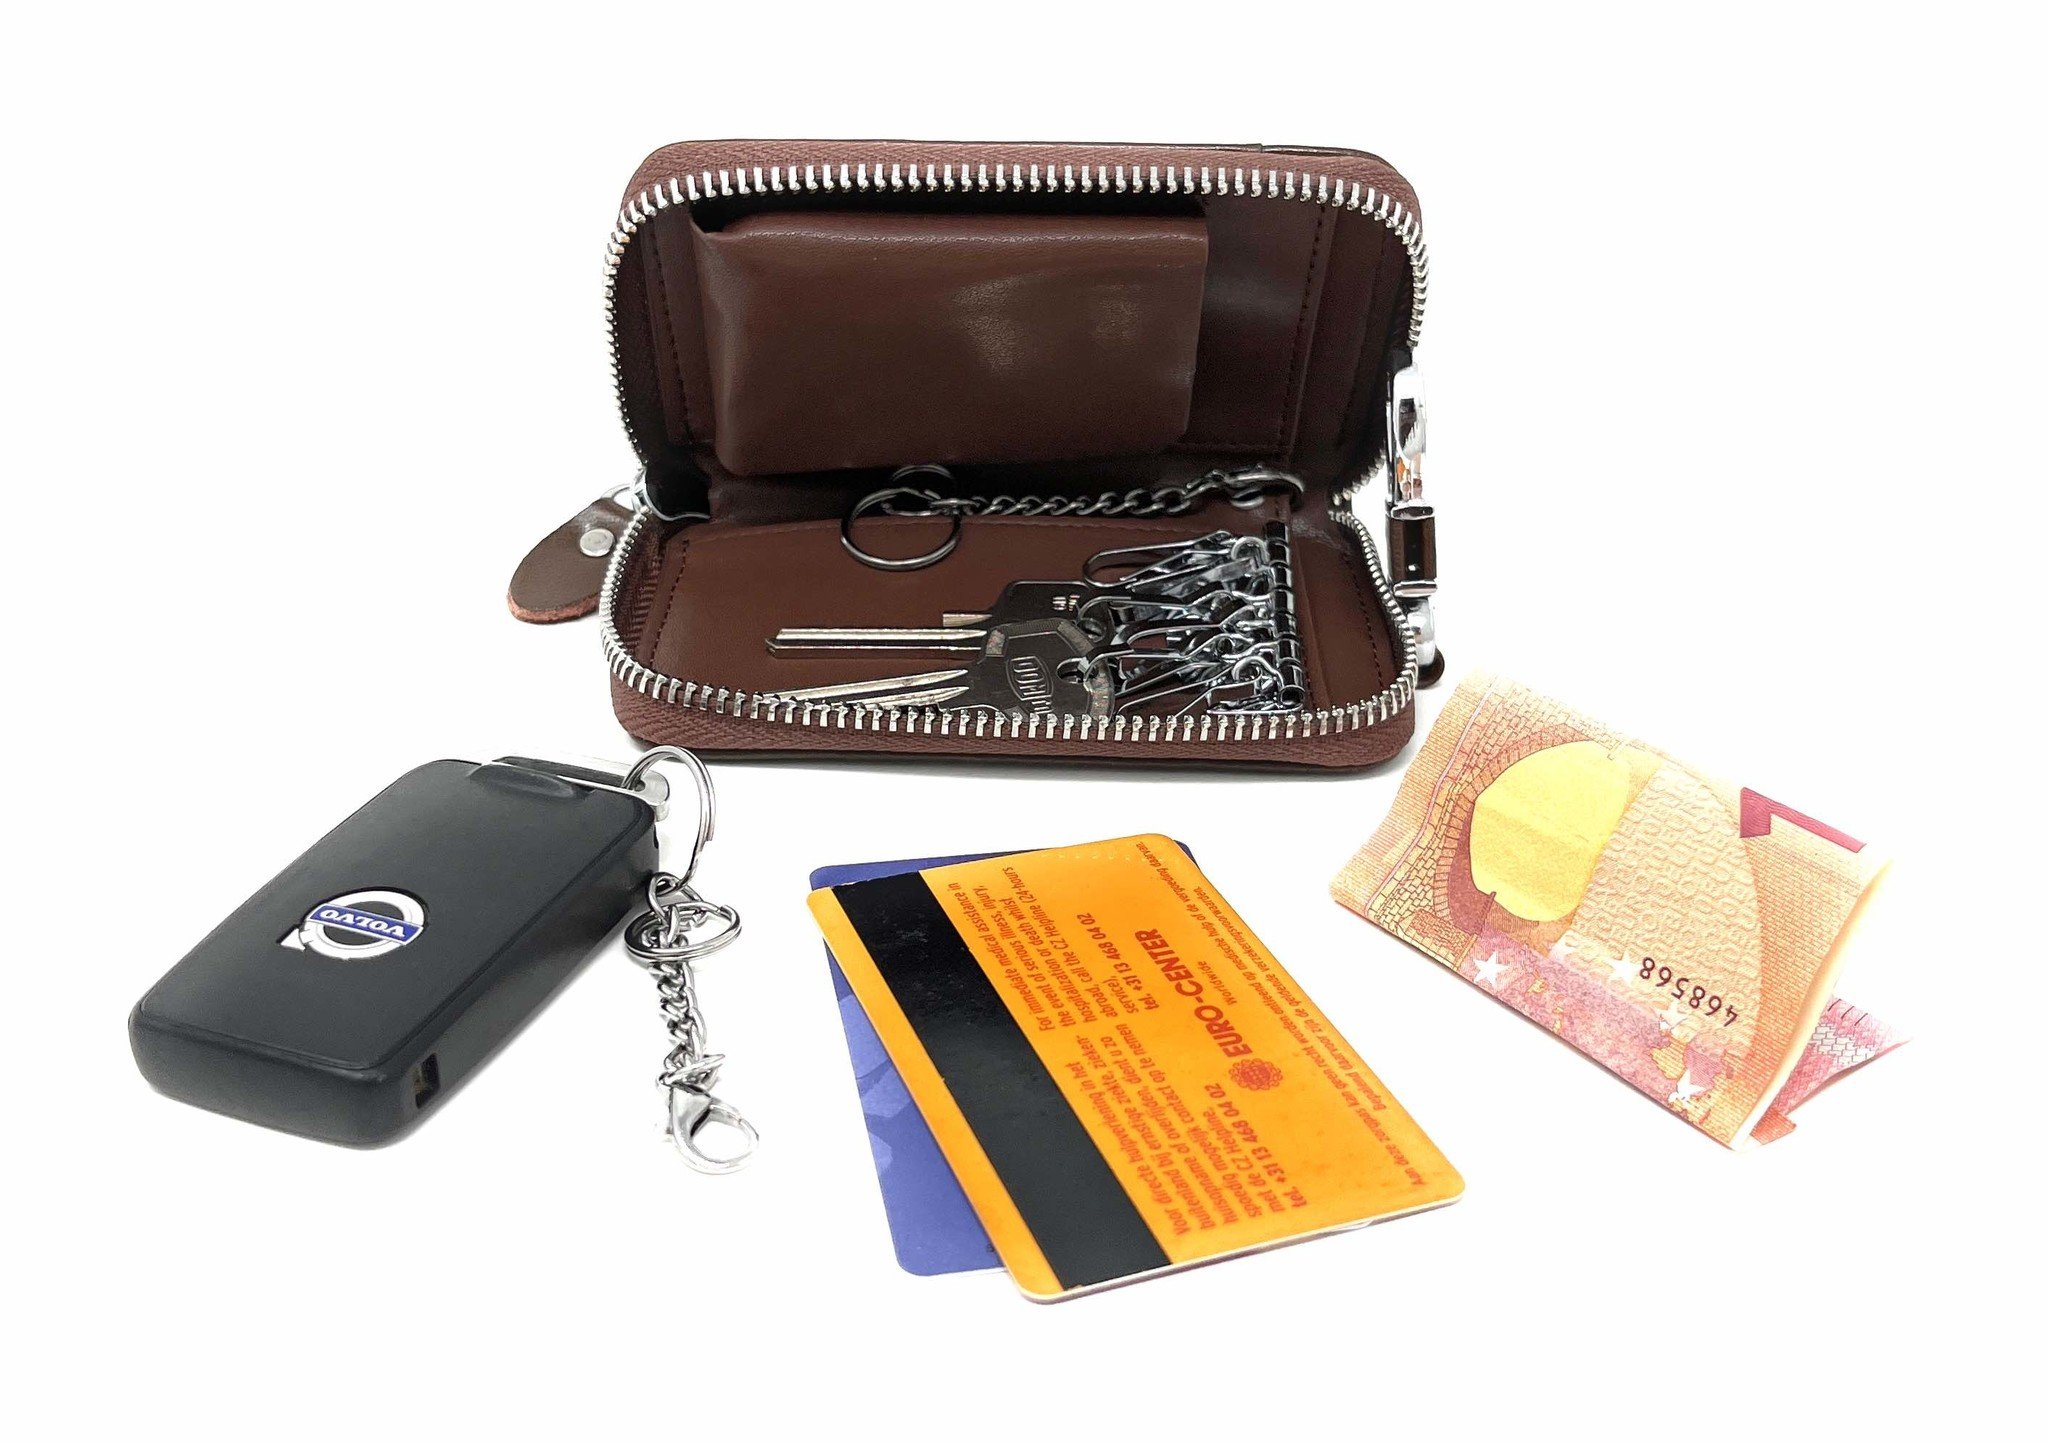 Leder-Schlüsseletui, 6 Schlüsselhaken, Kartenhalter, Geldschein-Brieftasche, Autoschlüsseltasche, Multifunktions-Schlüssel-Organizer - Braun-6